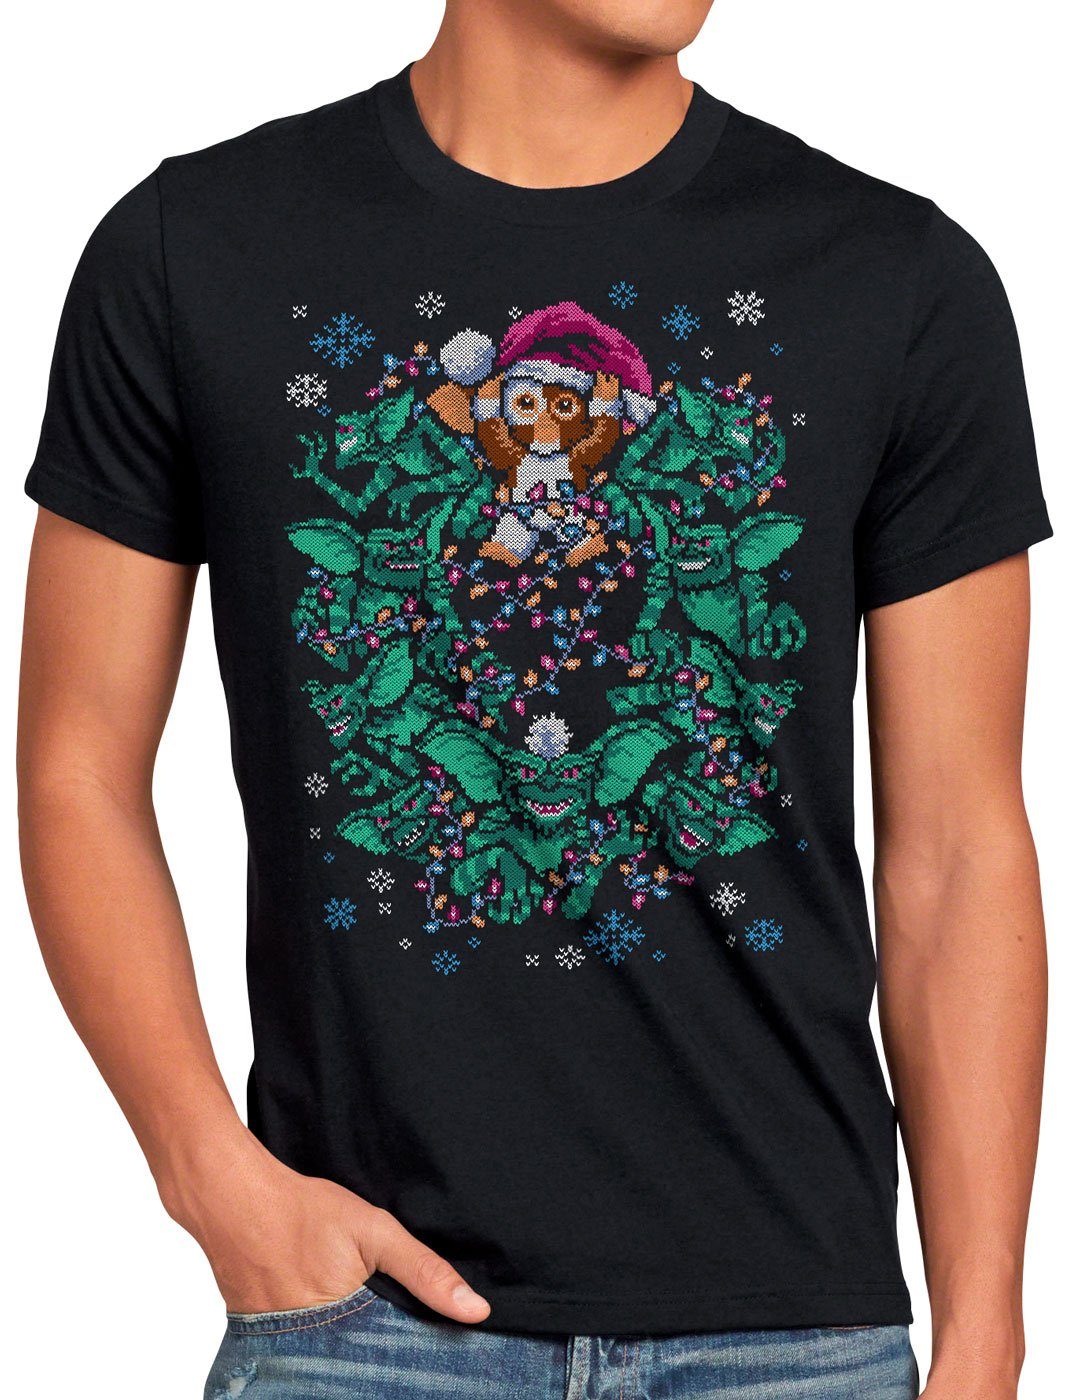 Print-Shirt sweater weihnachten strick weihnachtspullover Gizmo gremlins xmas ugly T-Shirt pulli Herren style3